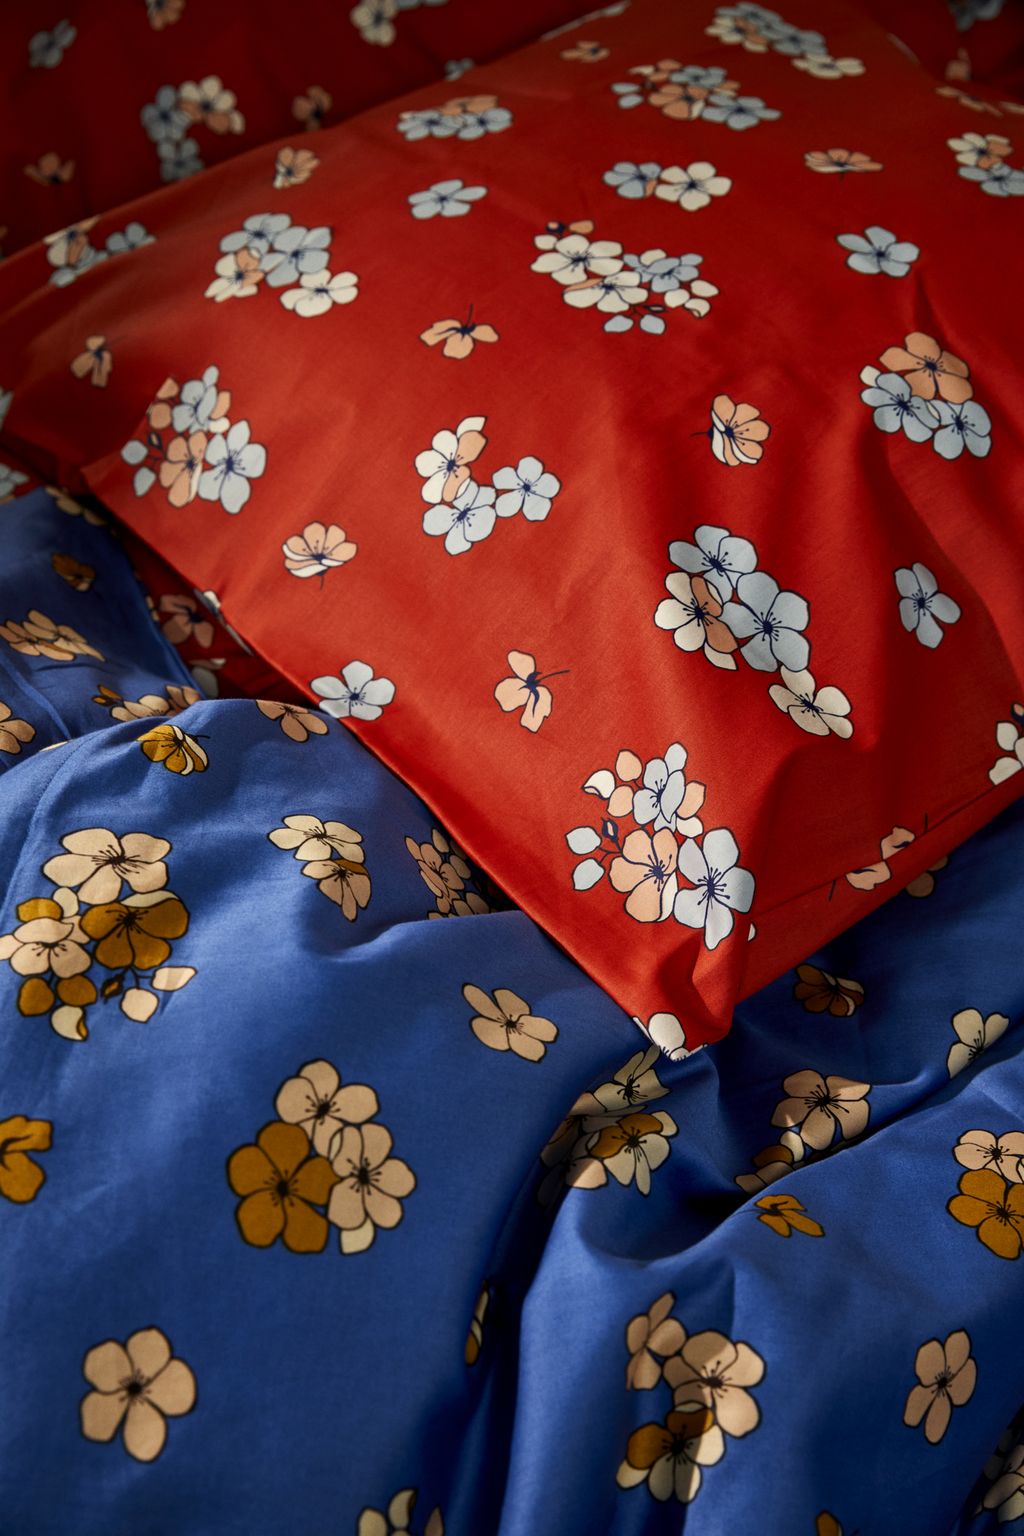 JUNA Stora behagligt sängkläder 140x200 cm, blå